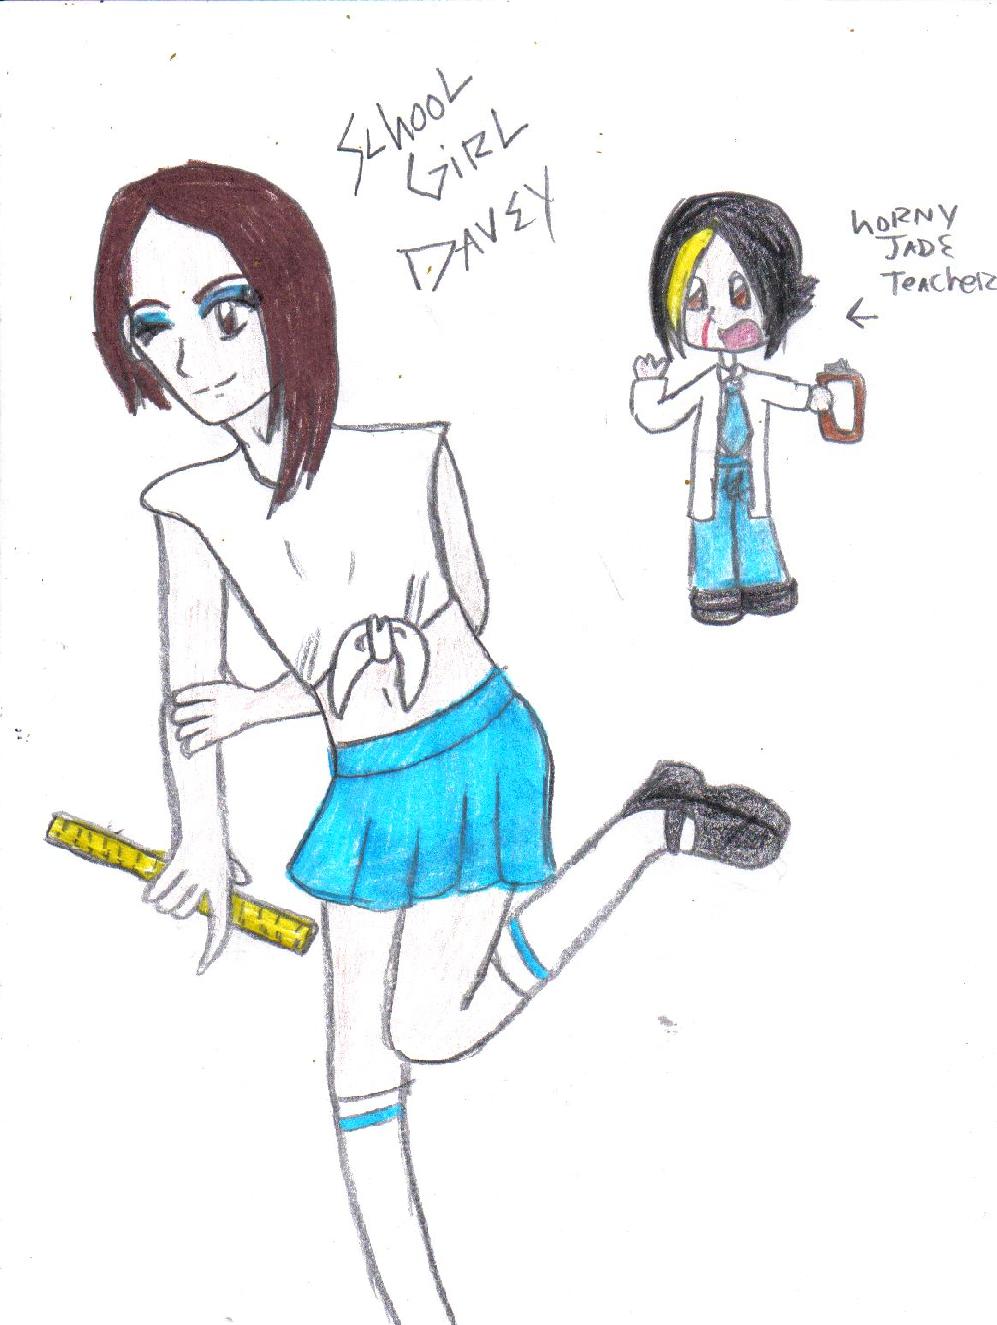 Davey as a School Girl by gerard_frankie_lvr